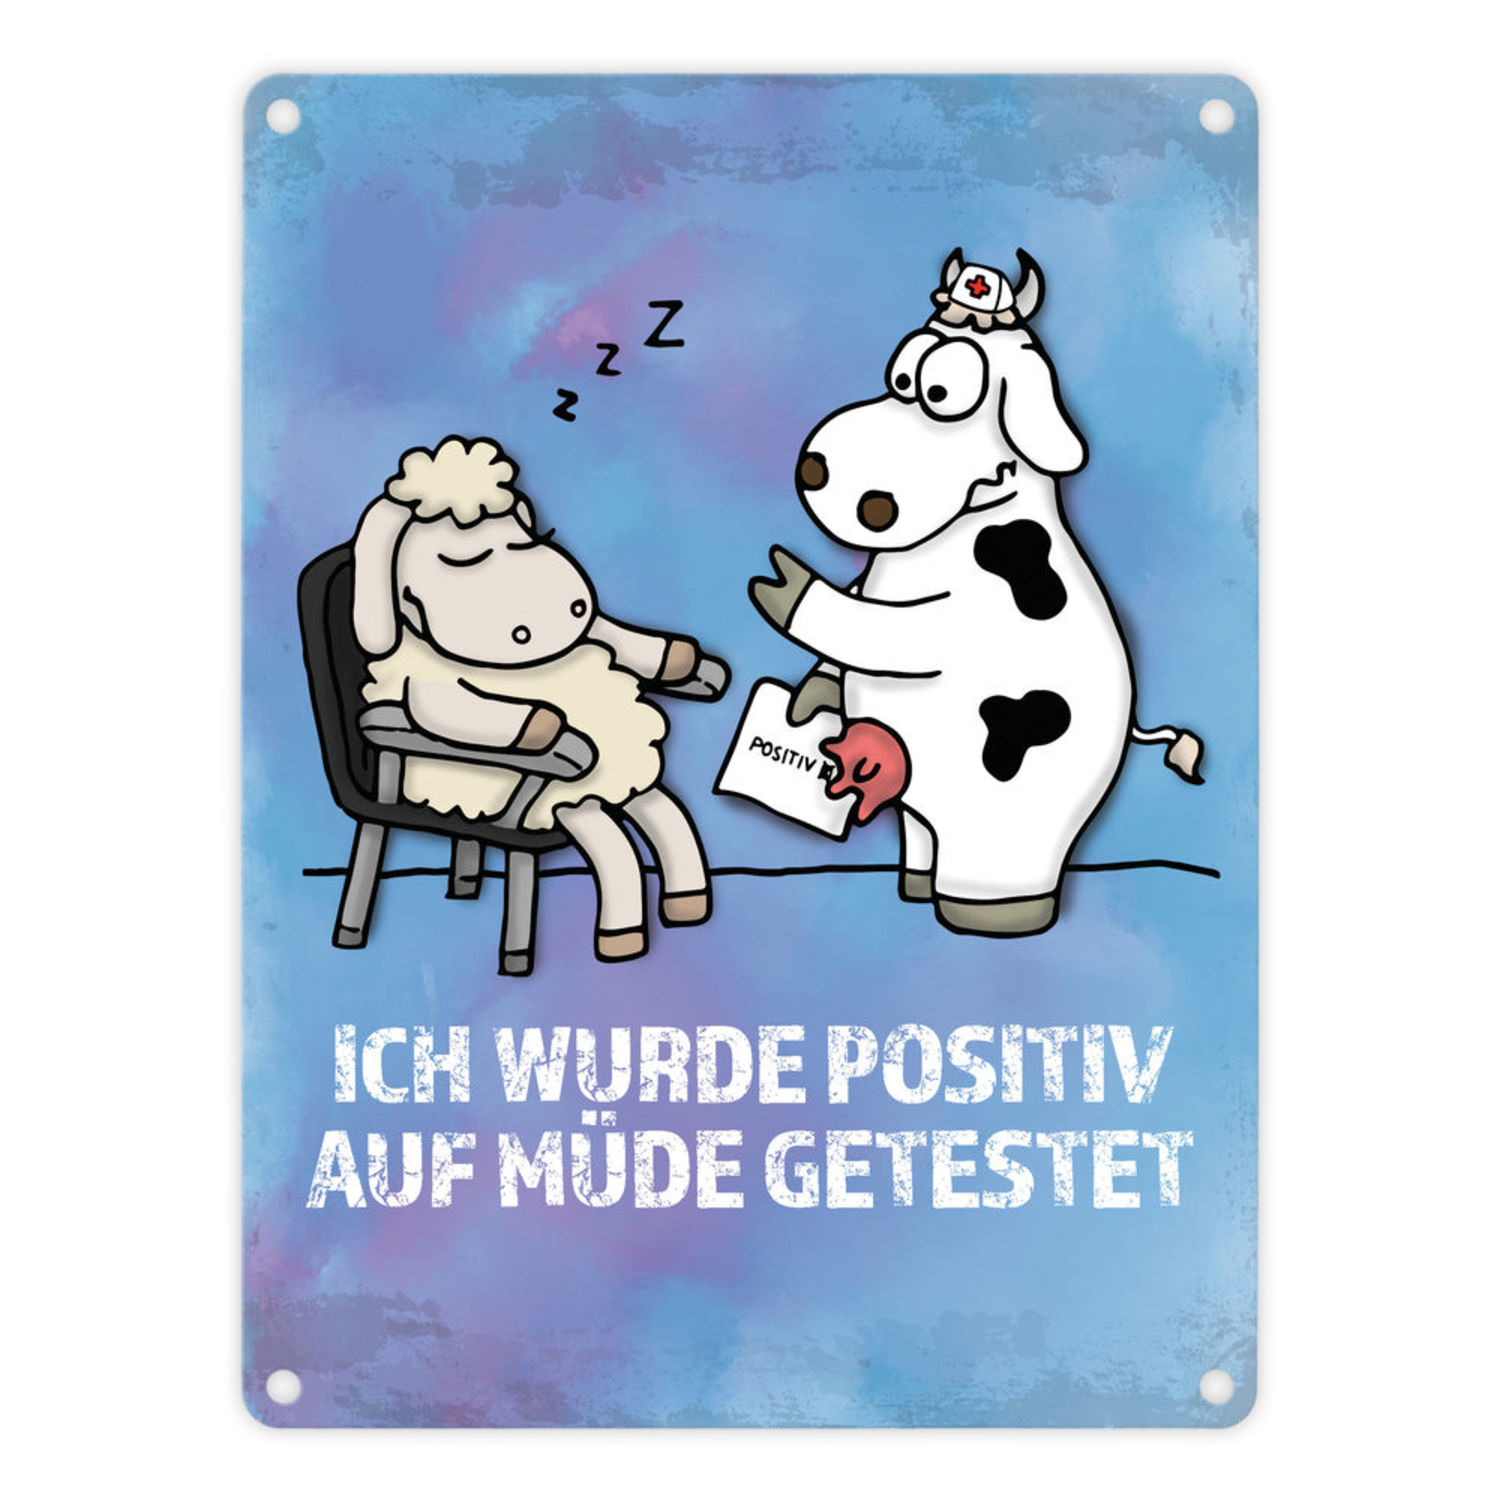 35+ Spruch muede , Metallschild mit Schaf und Kuh Motiv und Spruch Positiv auf Müde getestet bei trendaffe.de